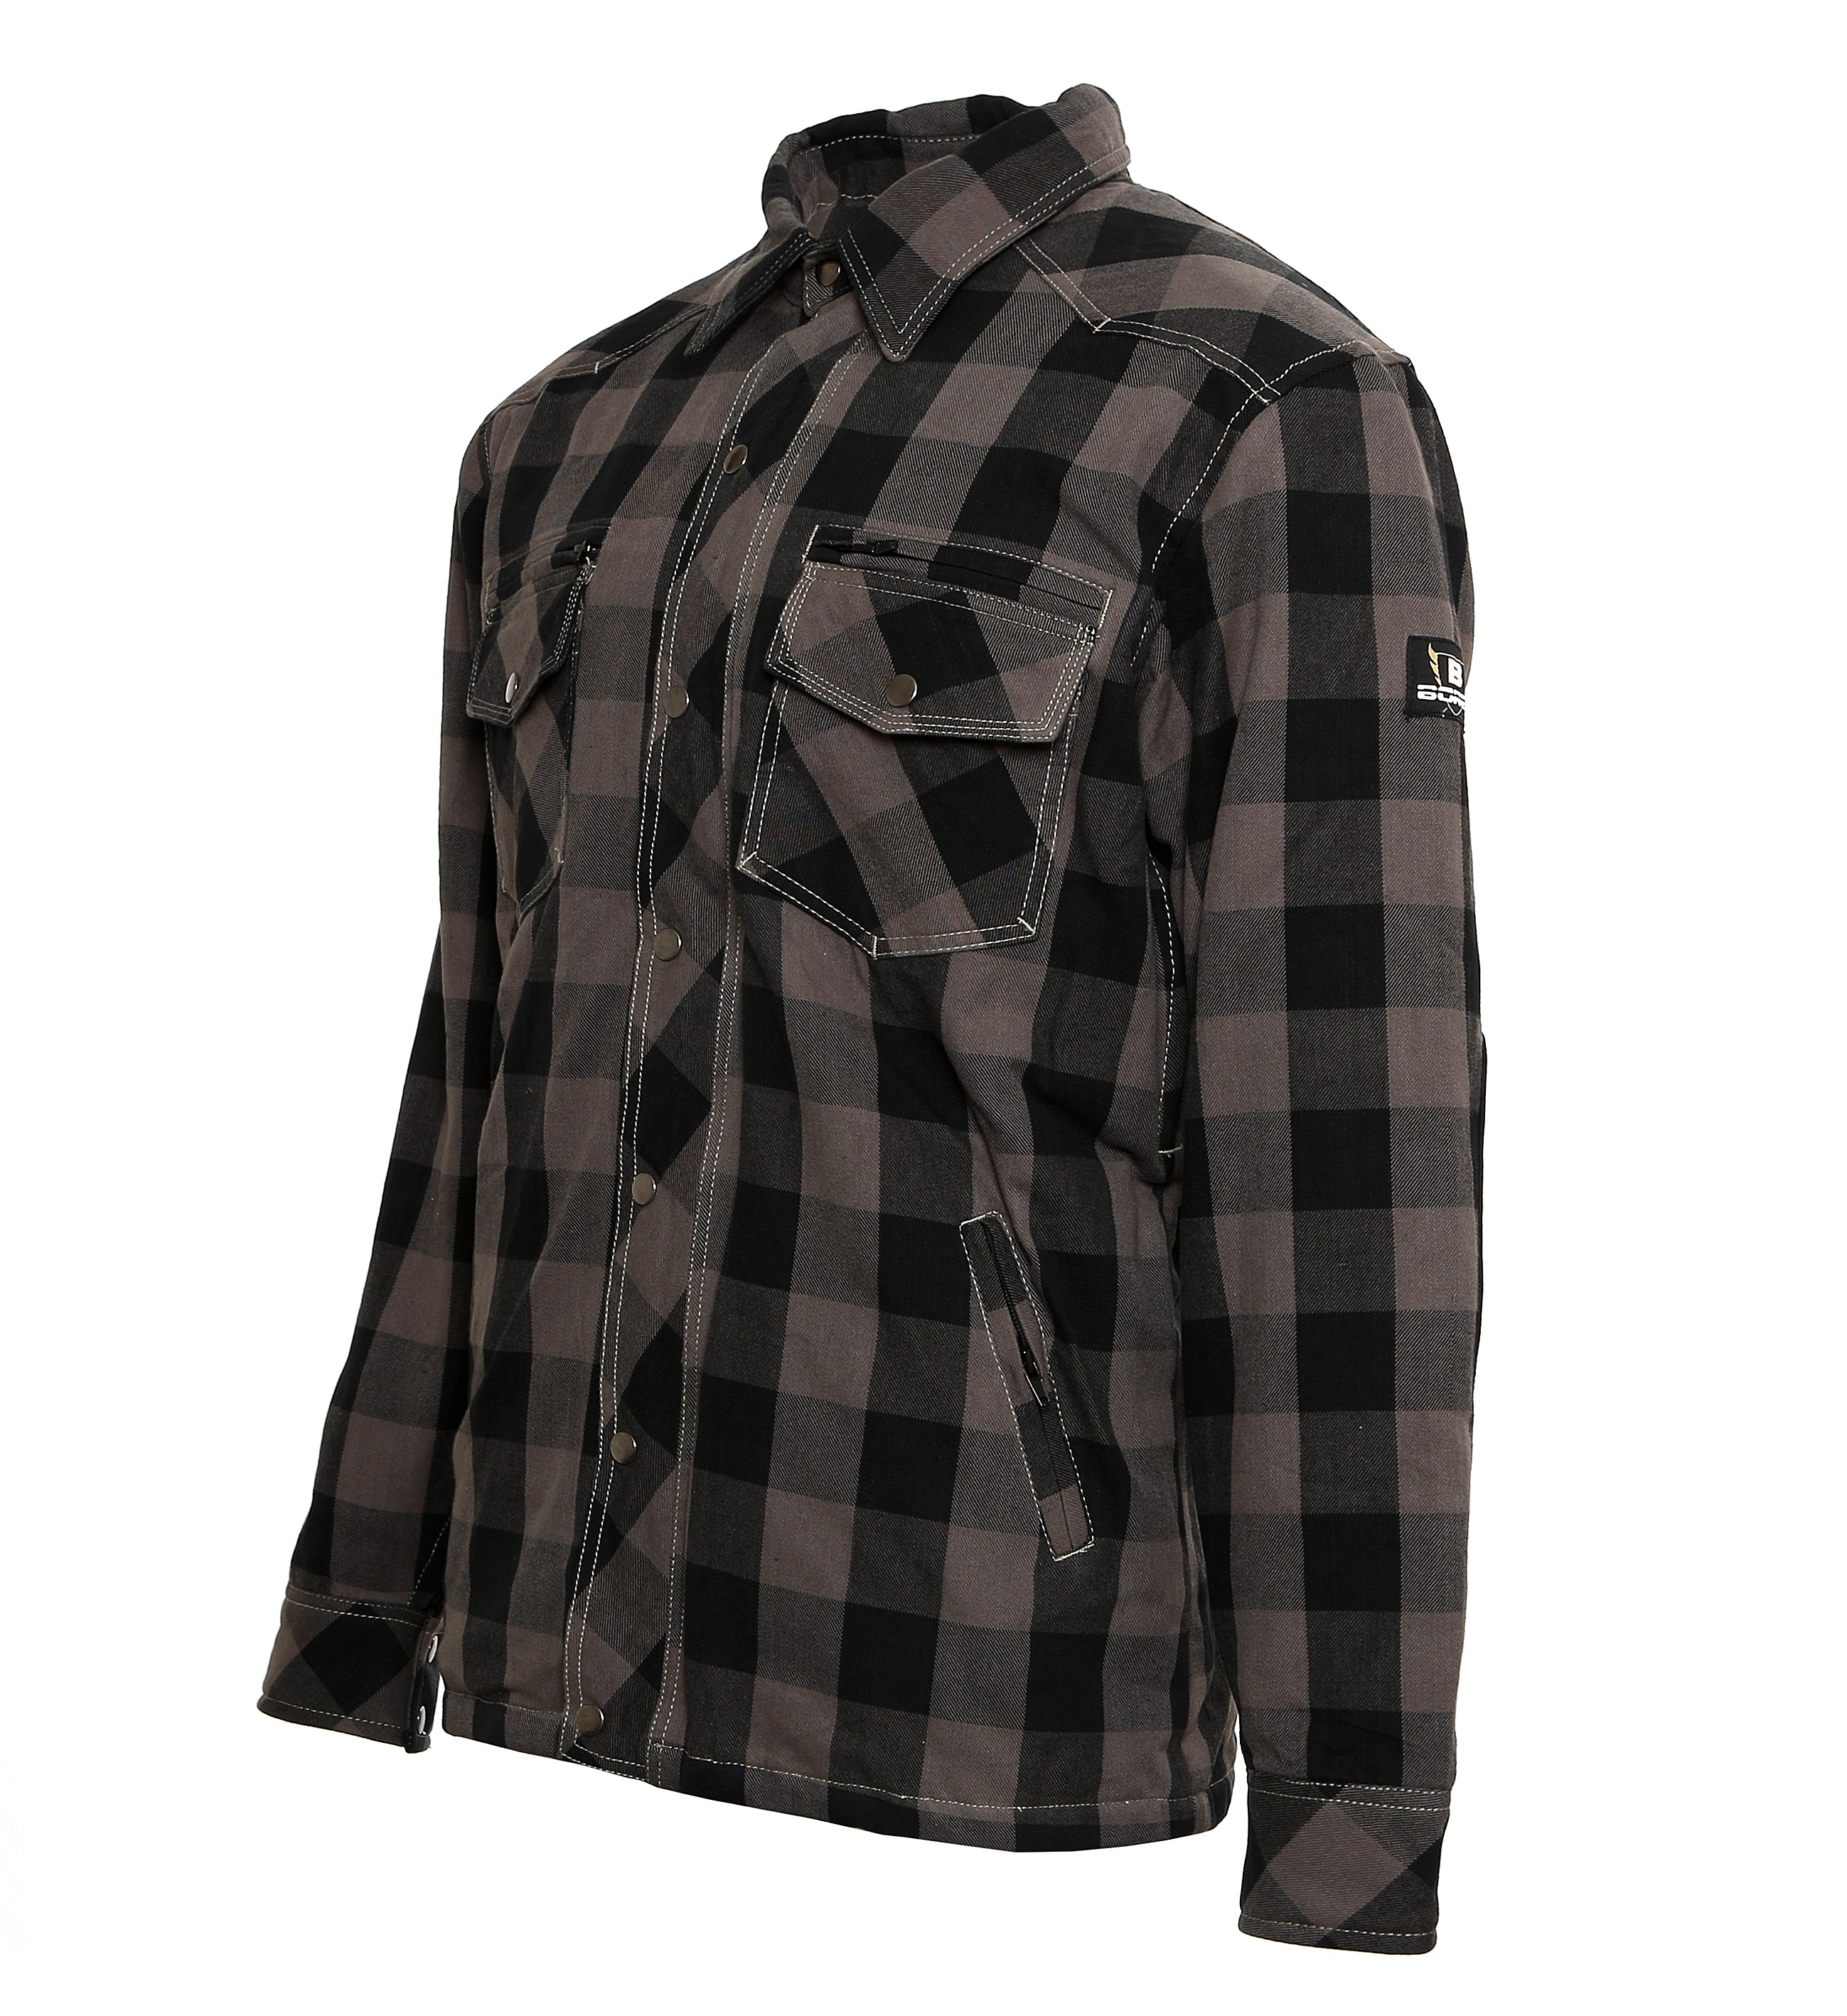 Grau-Schwarz Kariert Größe S Wasserabweisend Bores Lumberjack Jacken-Hemd Reißfest 